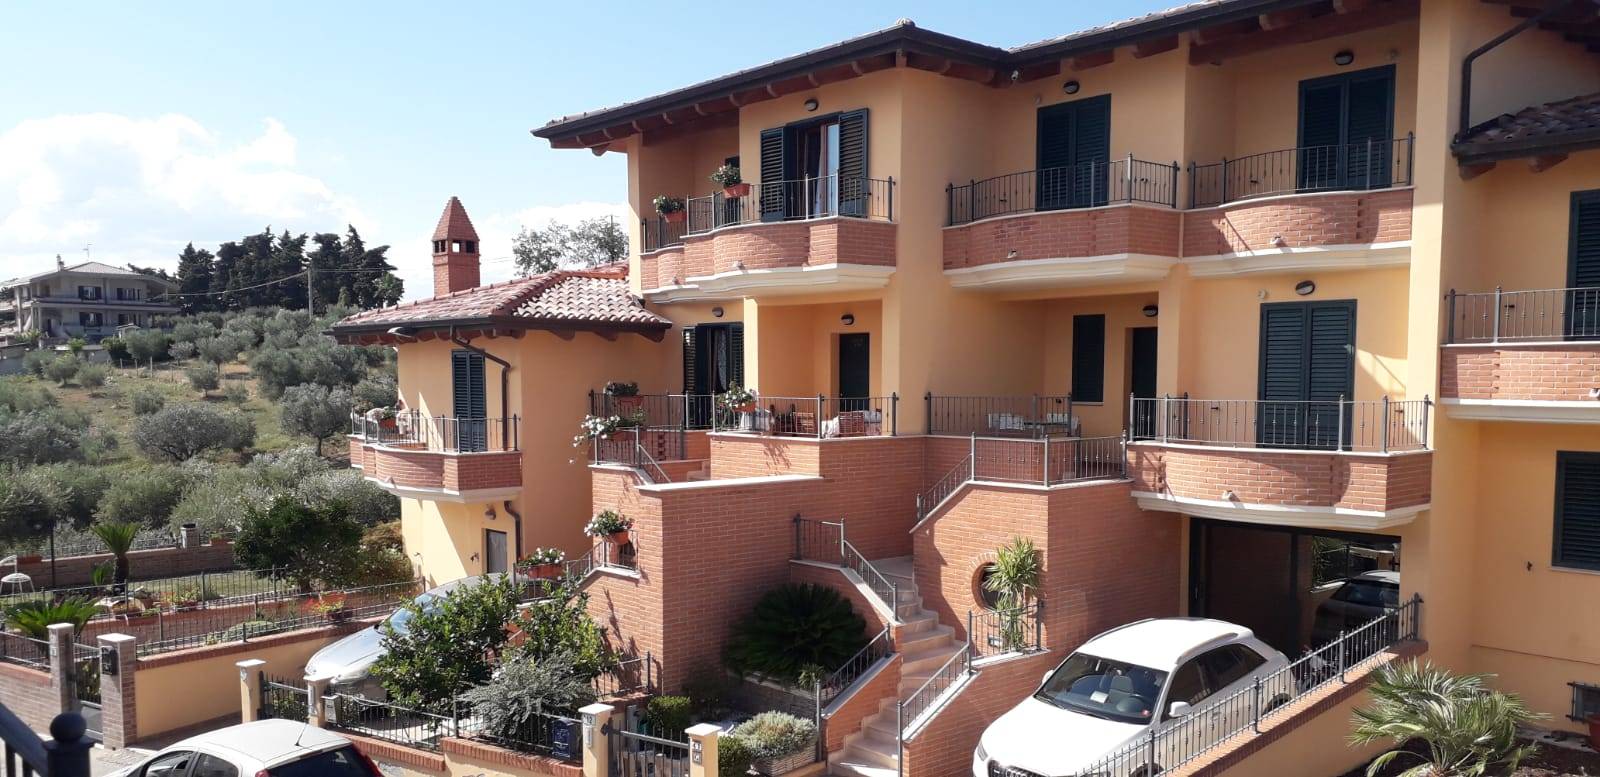 Villa a Schiera in vendita a Colonnella, 6 locali, prezzo € 280.000 | PortaleAgenzieImmobiliari.it